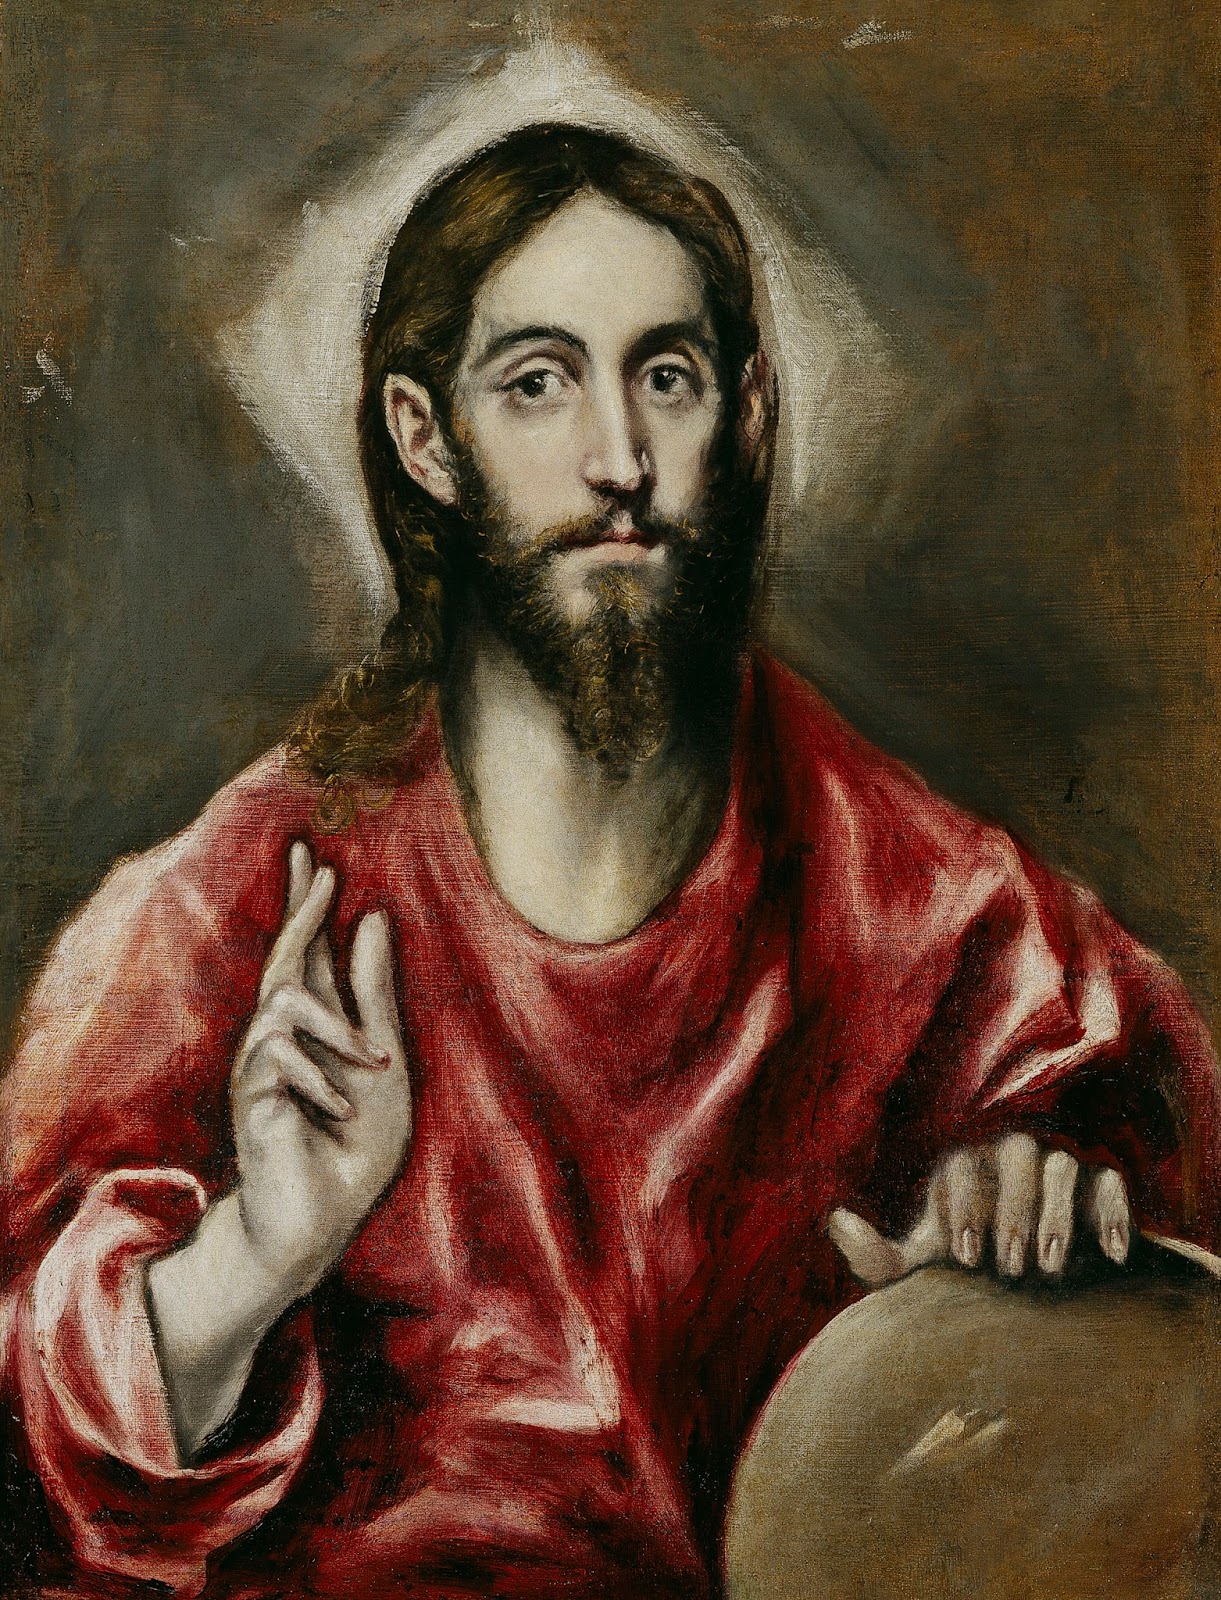 Imágenes: El Greco. El Salvador